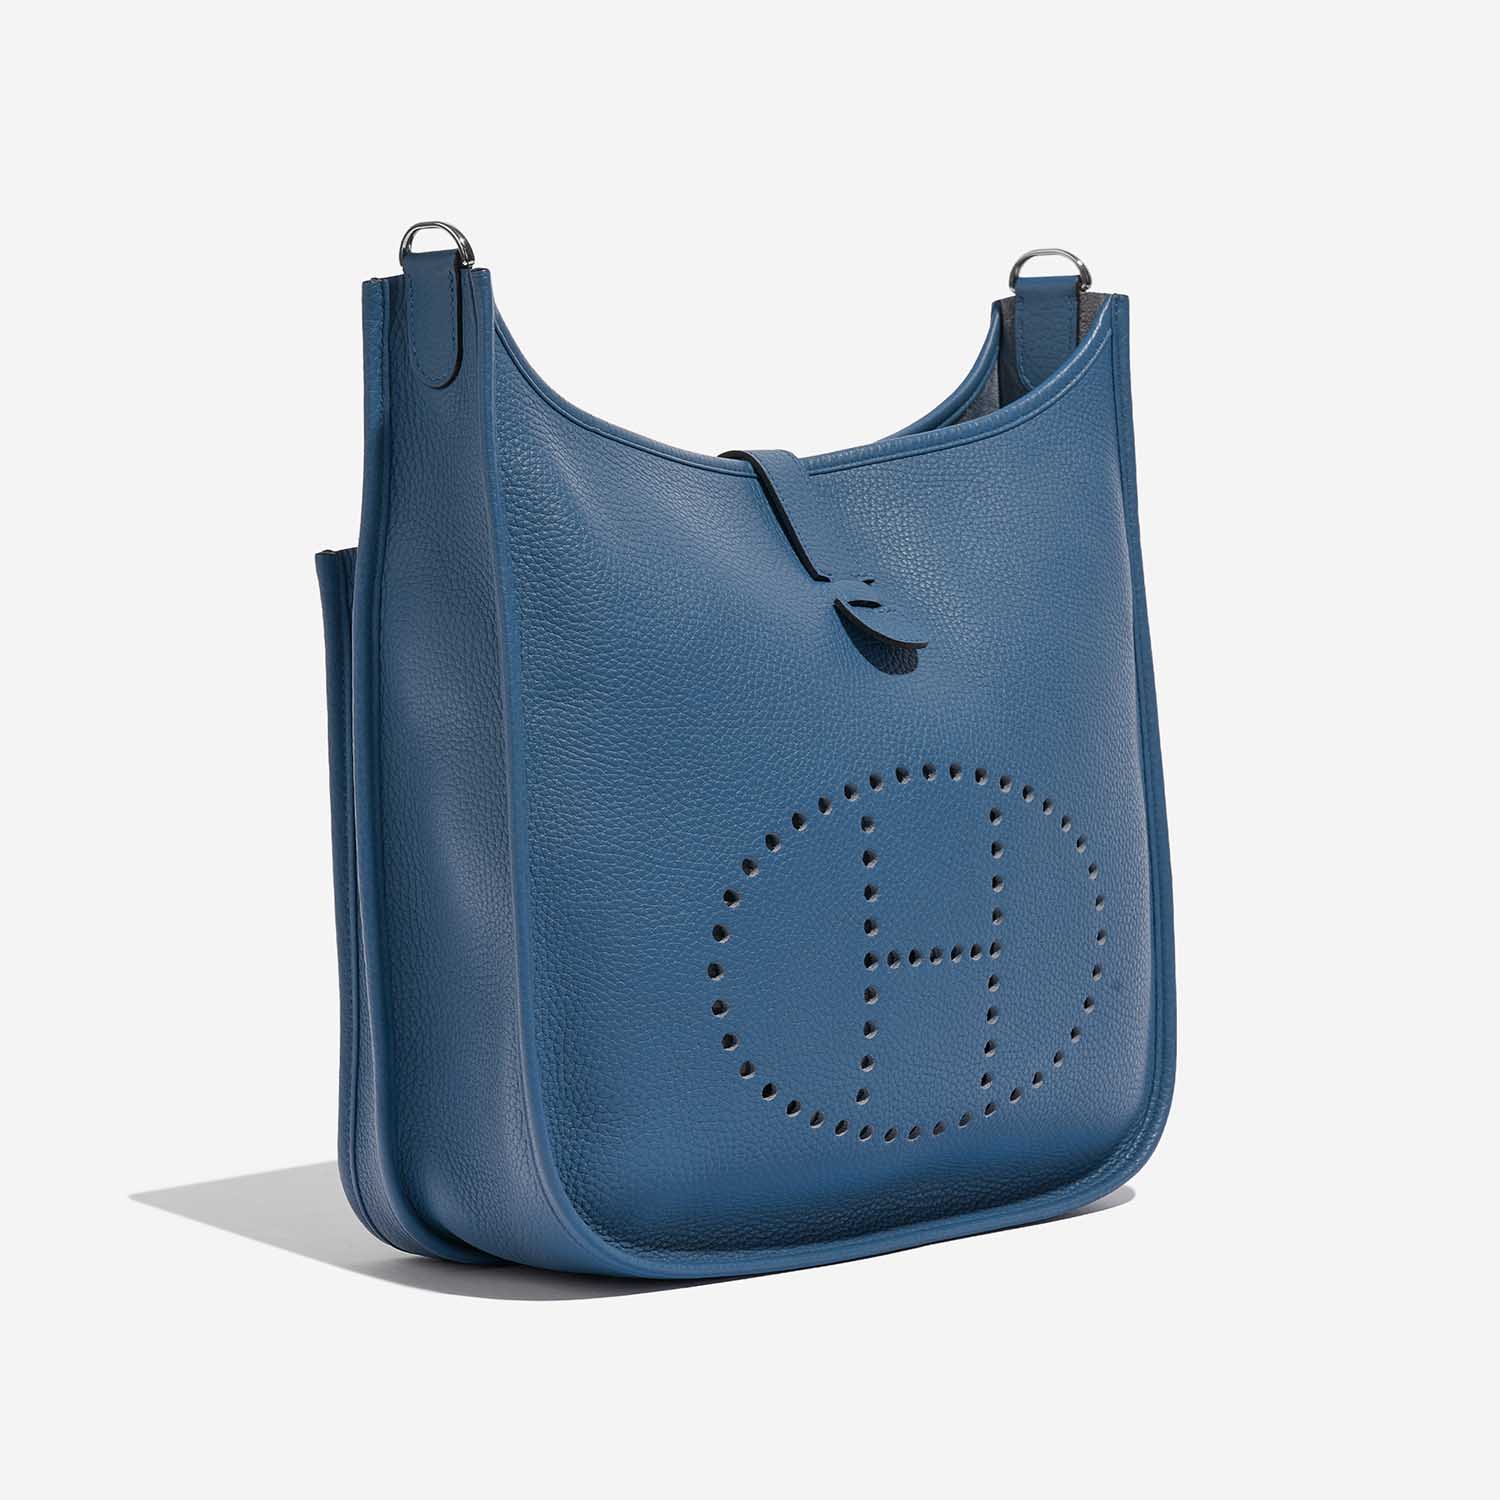 Pre-owned Hermès Tasche Evelyne 33 Clemence Bleu Agathe Blue Side Front | Verkaufen Sie Ihre Designer-Tasche auf Saclab.com